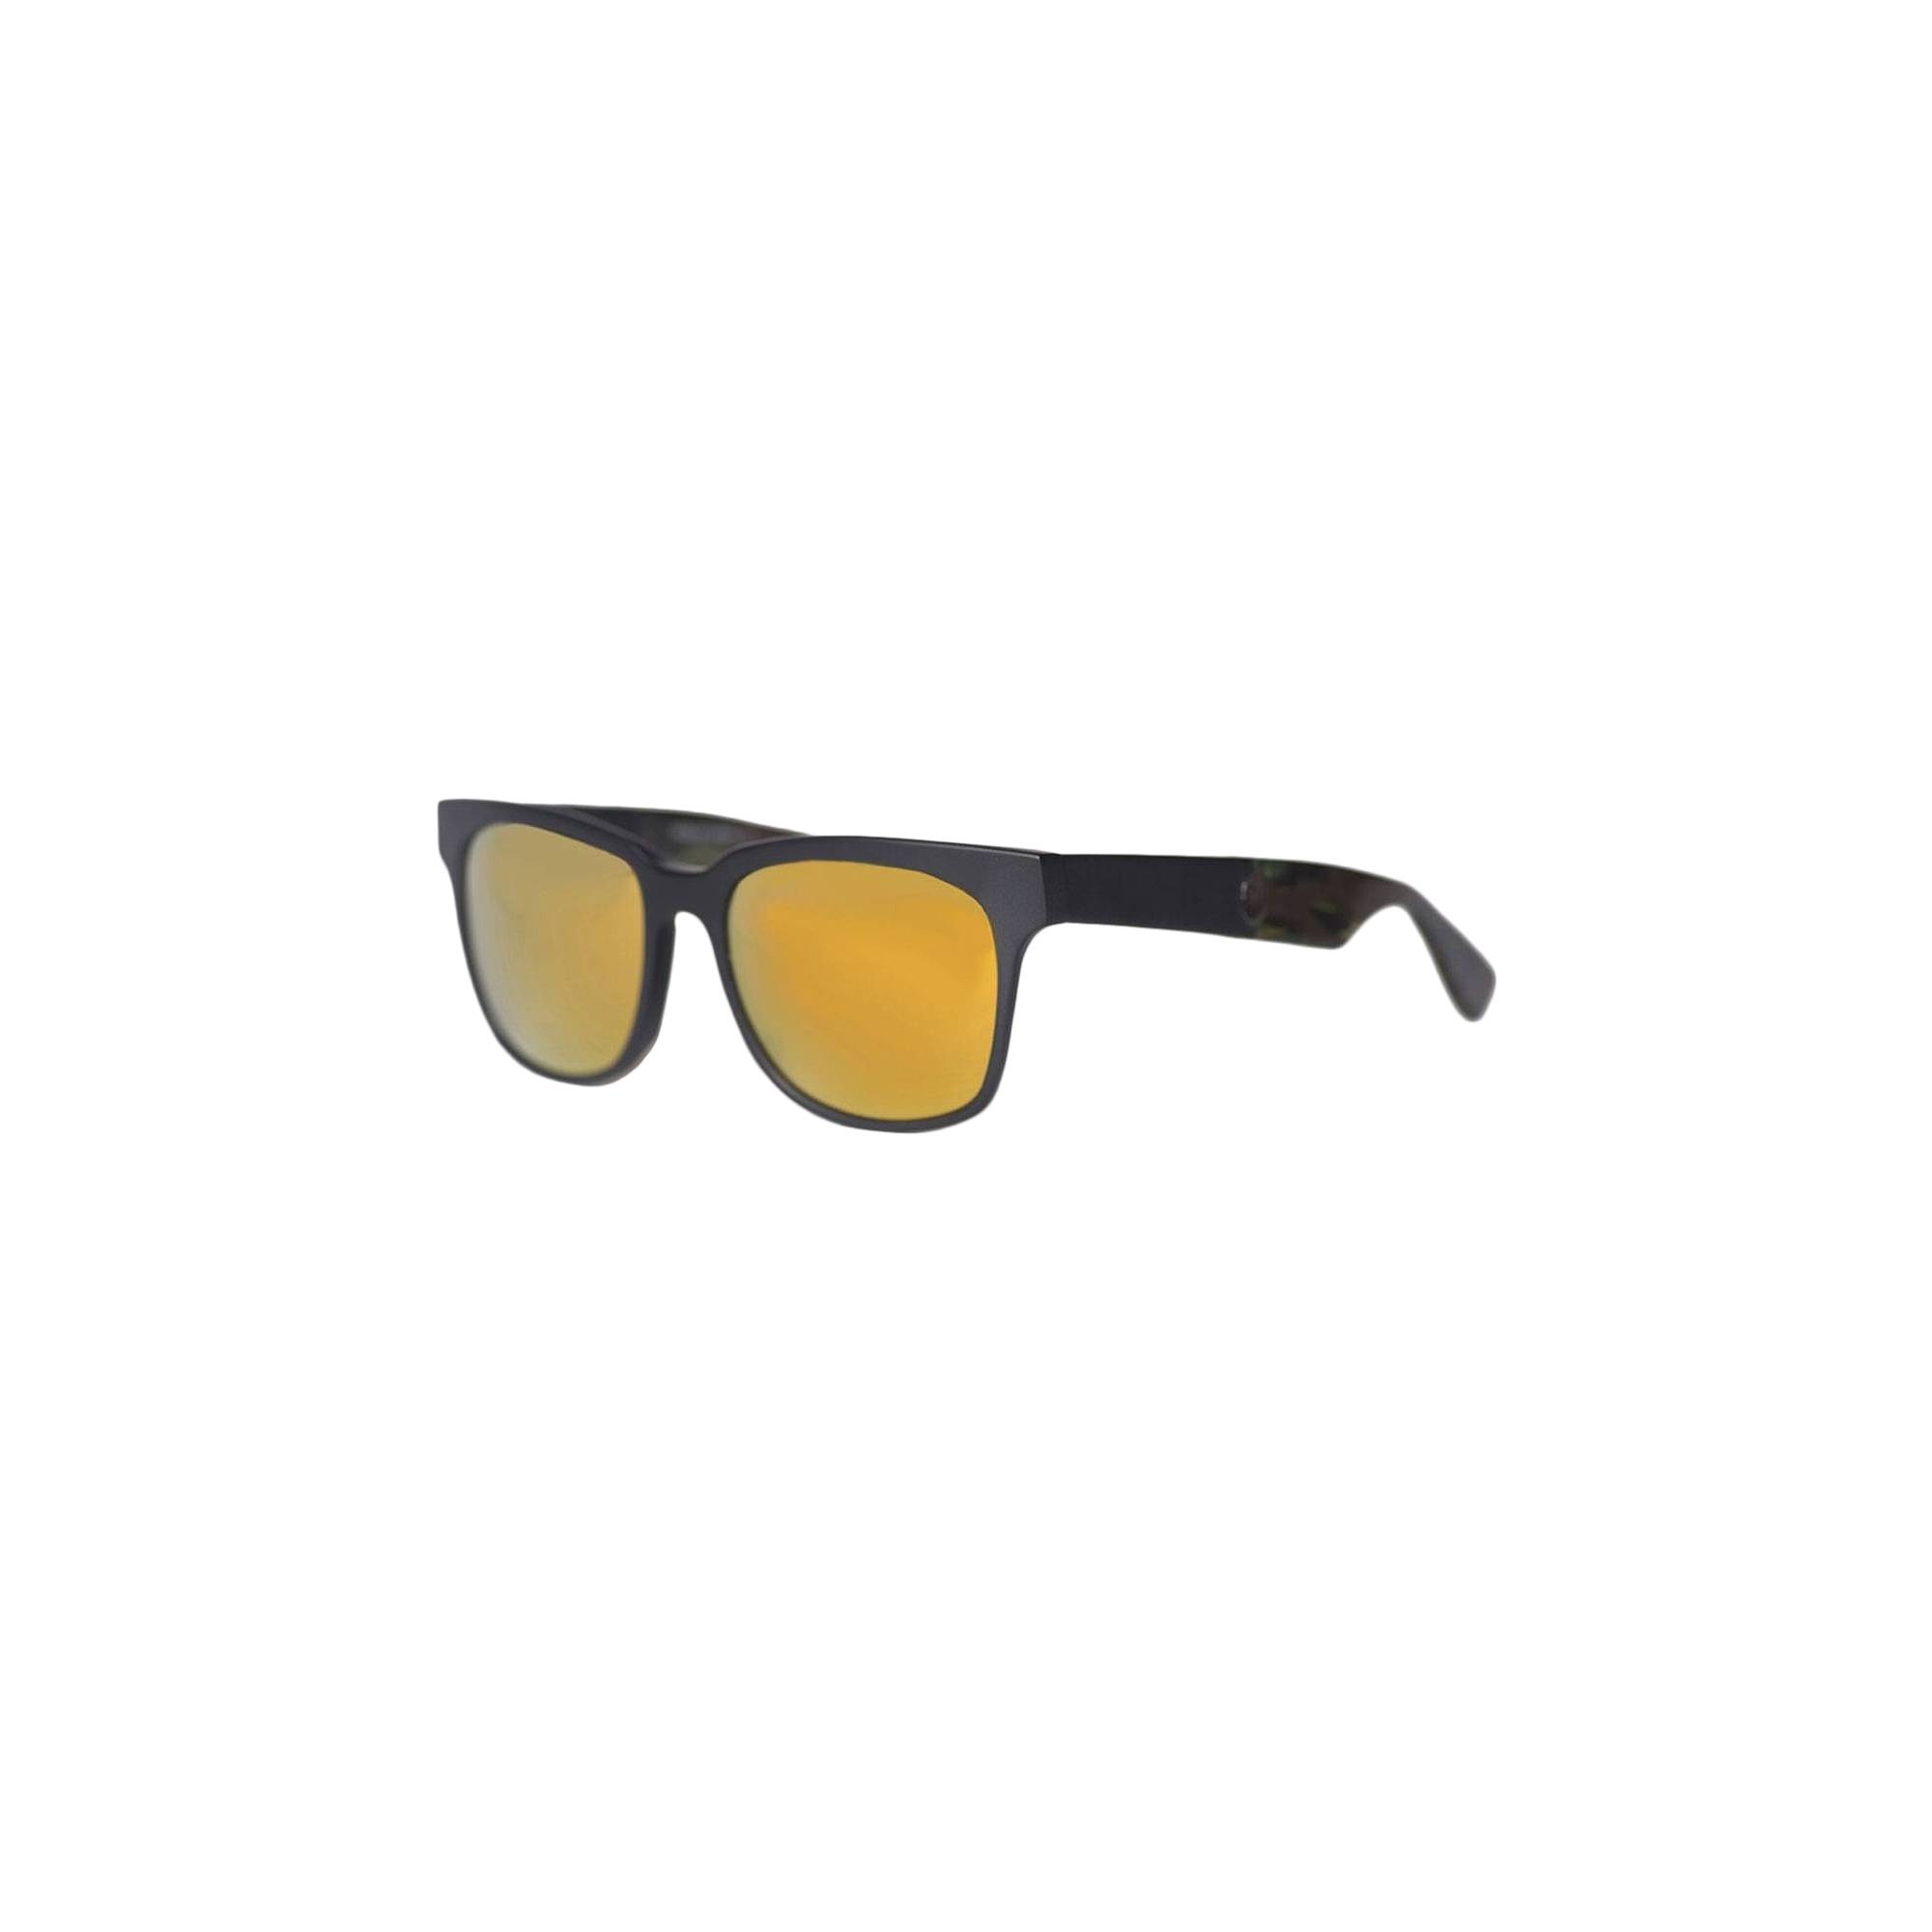 BAPE Sunglasses 'Black/Matte Black' - 1